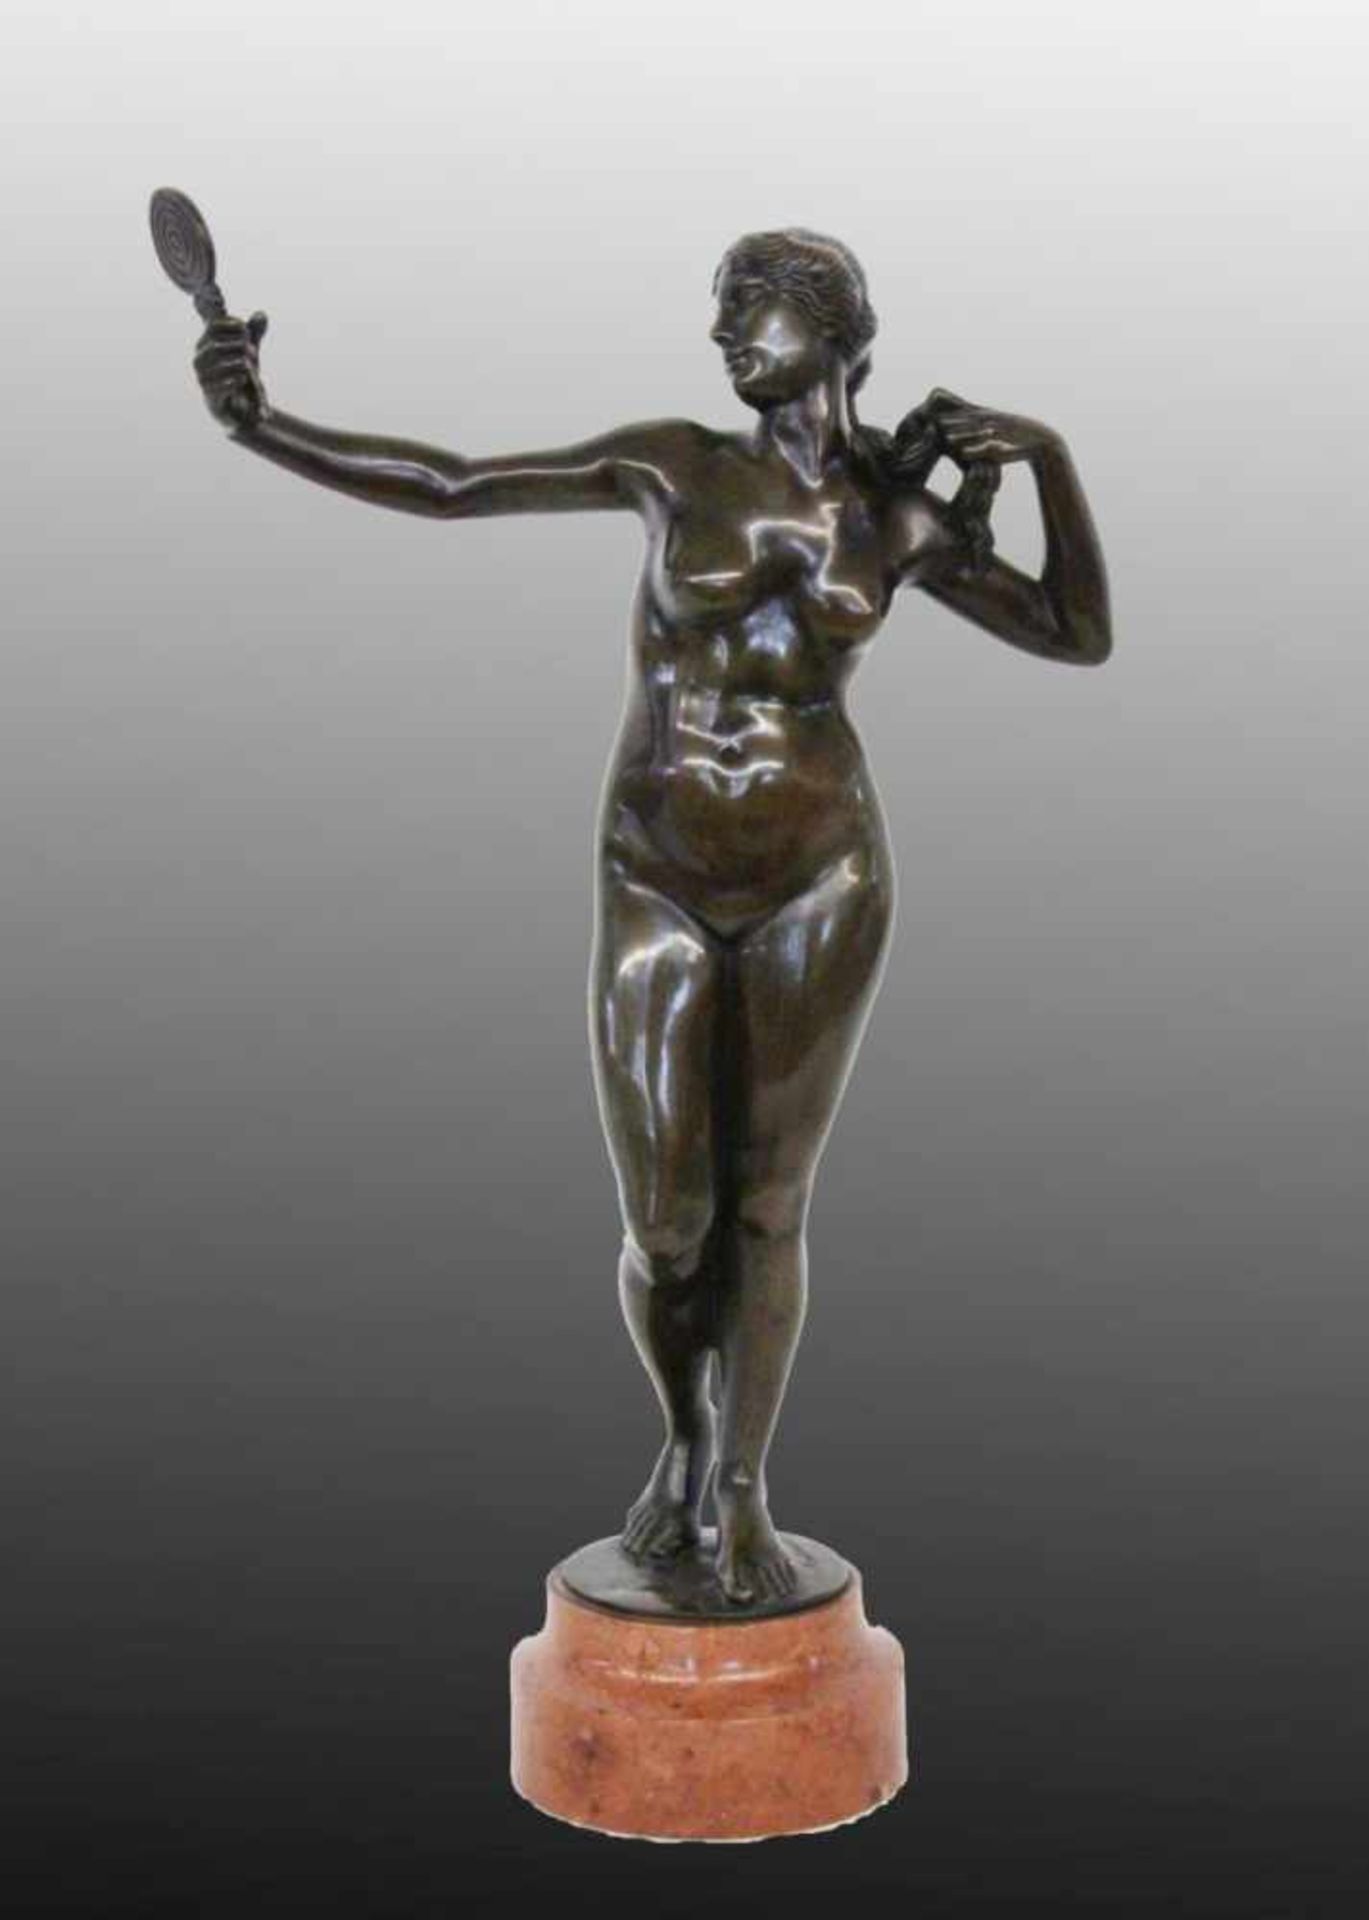 MARTINELLINI italienischer Bildhauer, 19.Jh. Venus mit Spiegel. Patinierte Bronze auf